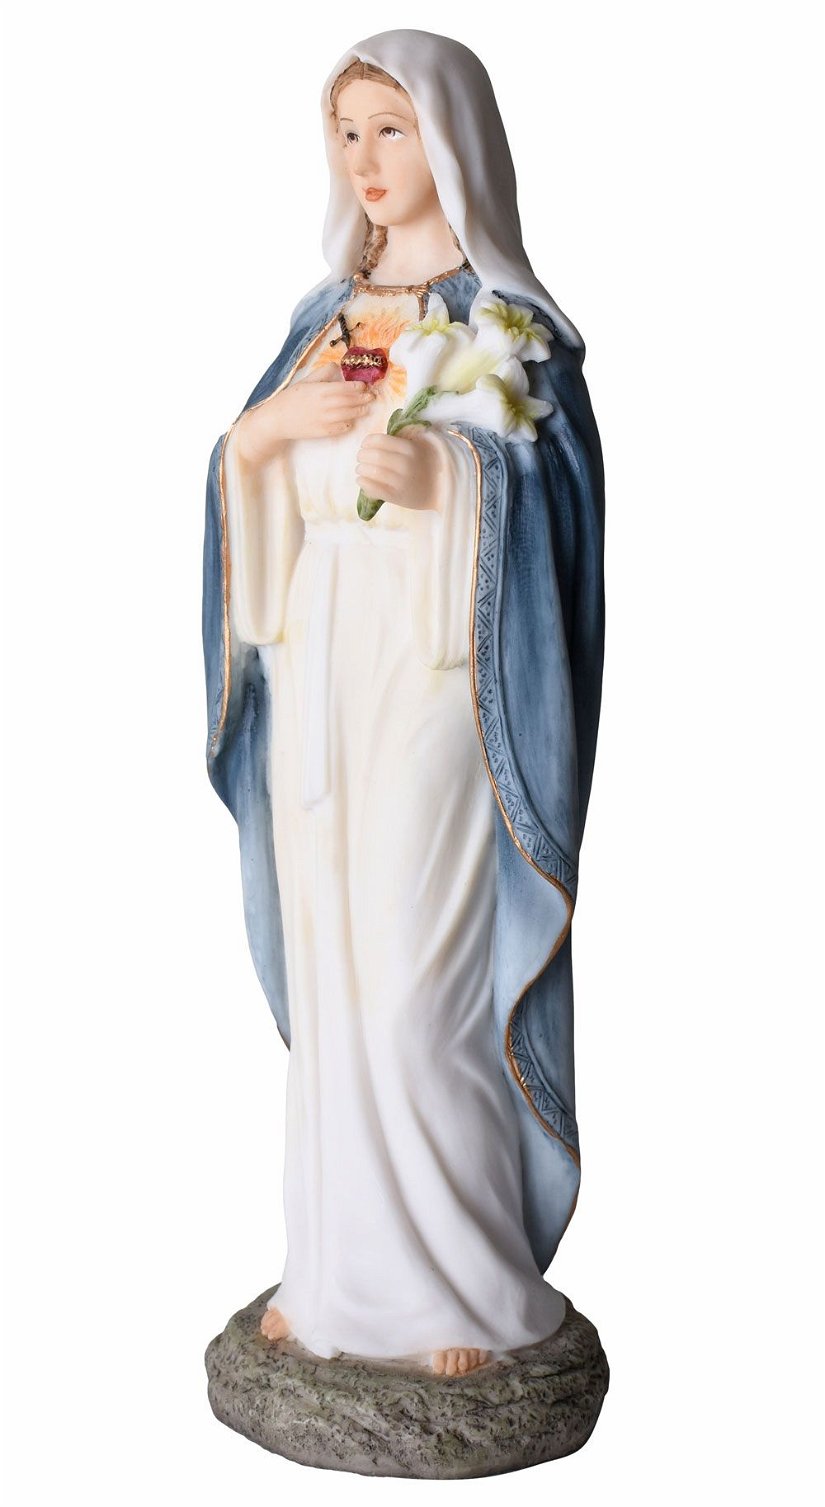 Statueta din ceramica cu Fecioara Maria